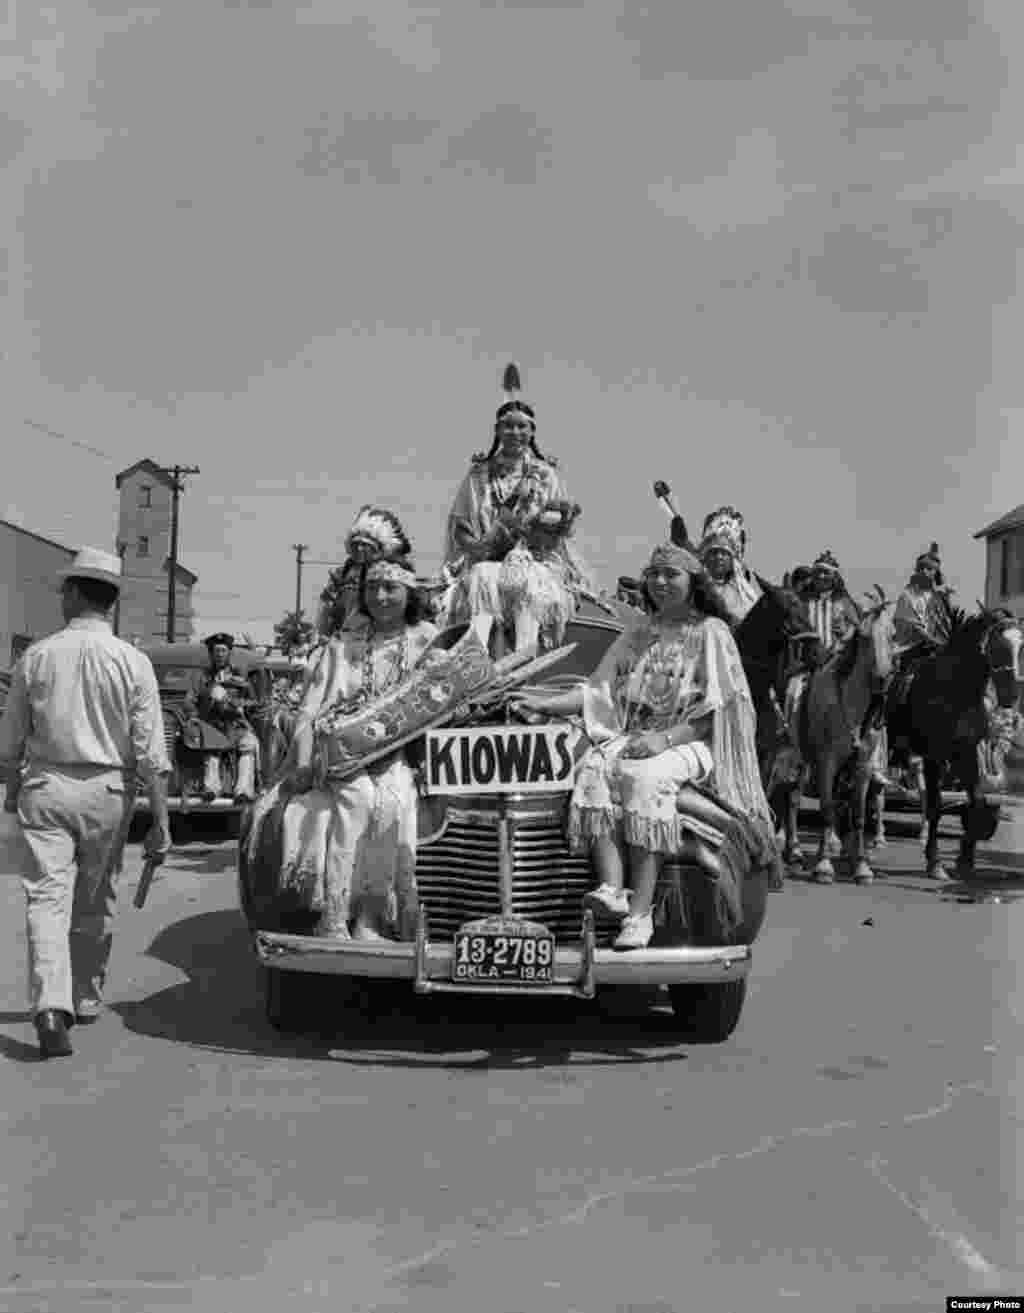 Хуанита Даугама Ахтоун, Ивалу Вэар Рассел (принцесса парада) и Аугустин Кэмпбелл Барш (Кайова). Анадарко (Оклахома), 1941 г.